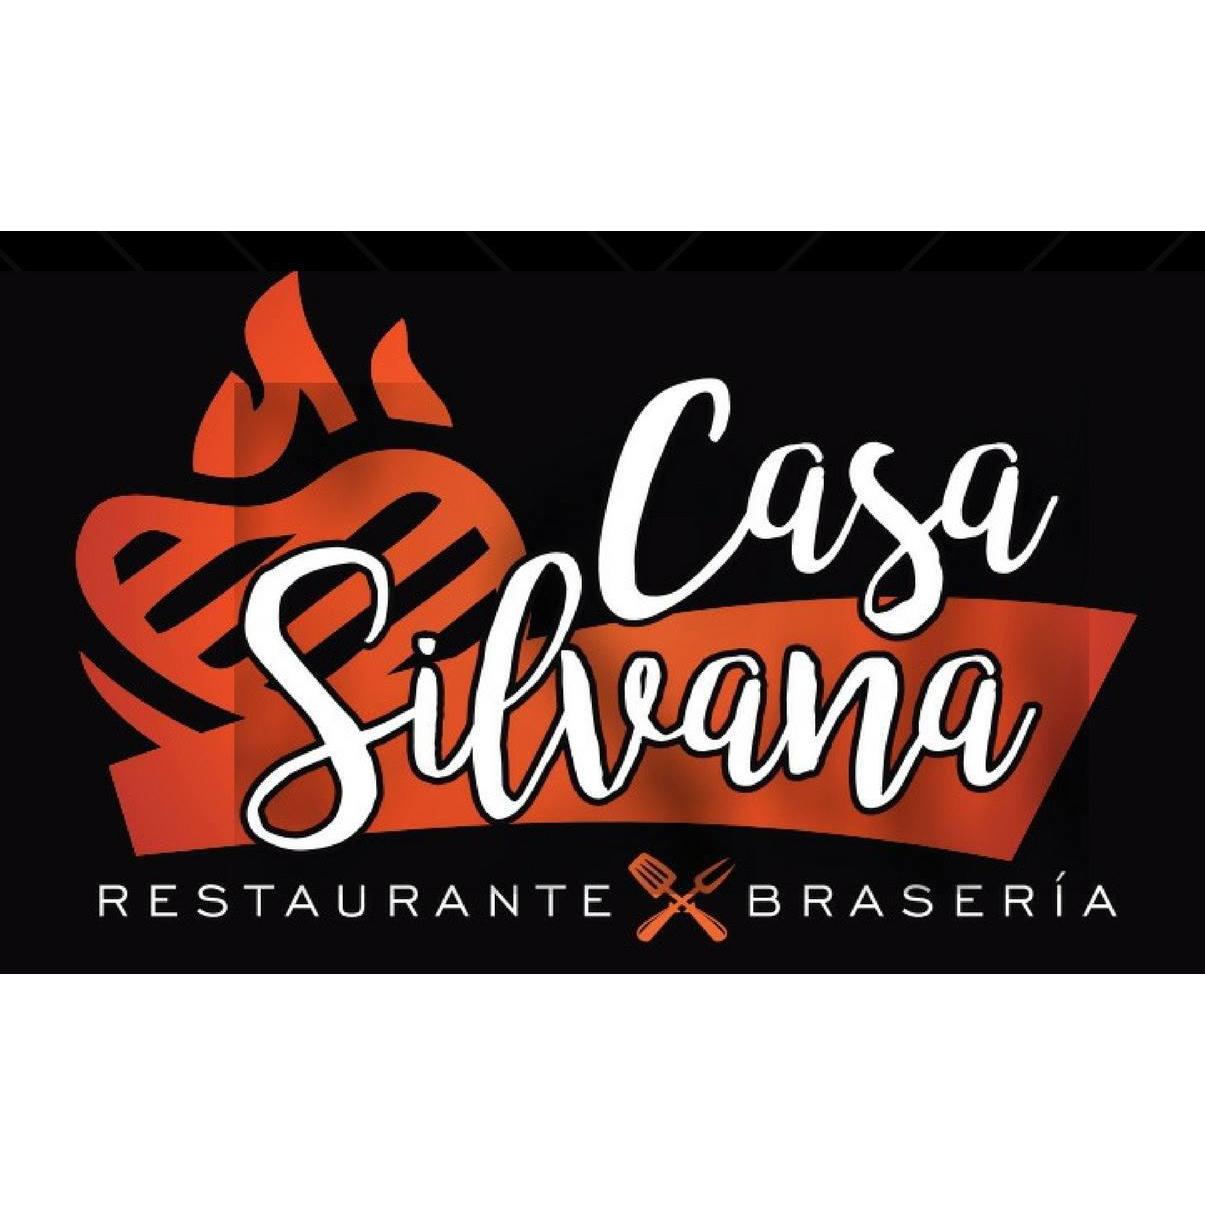 Restaurante Brasería Casa Silvana Chiva